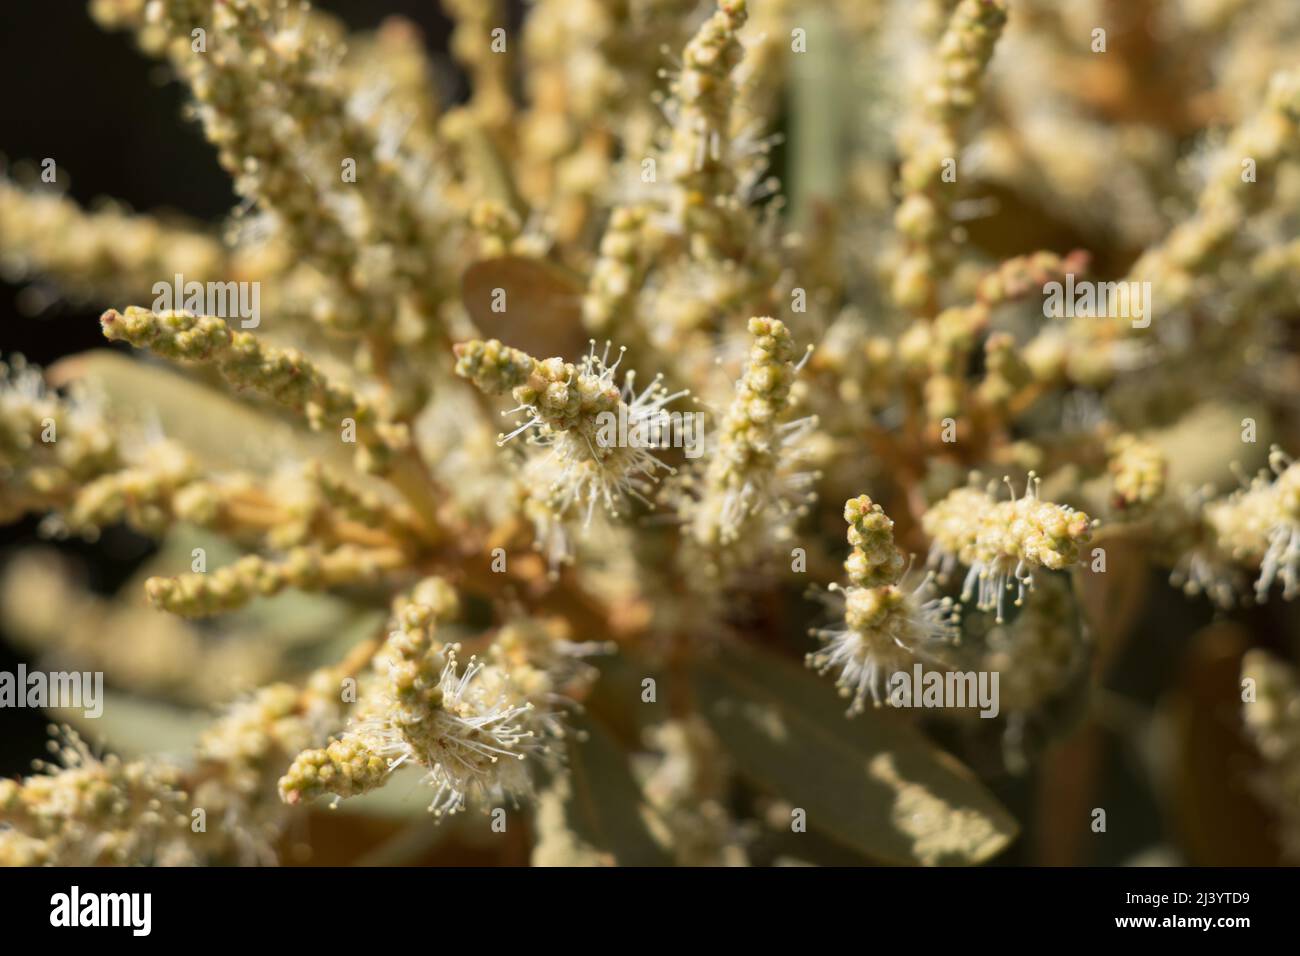 Floraison verte étaminée racemose catkin inflorescences de Chrysolepis sempervirens, Fagaceae, arbuste indigène dans les montagnes San Bernardino, été. Banque D'Images